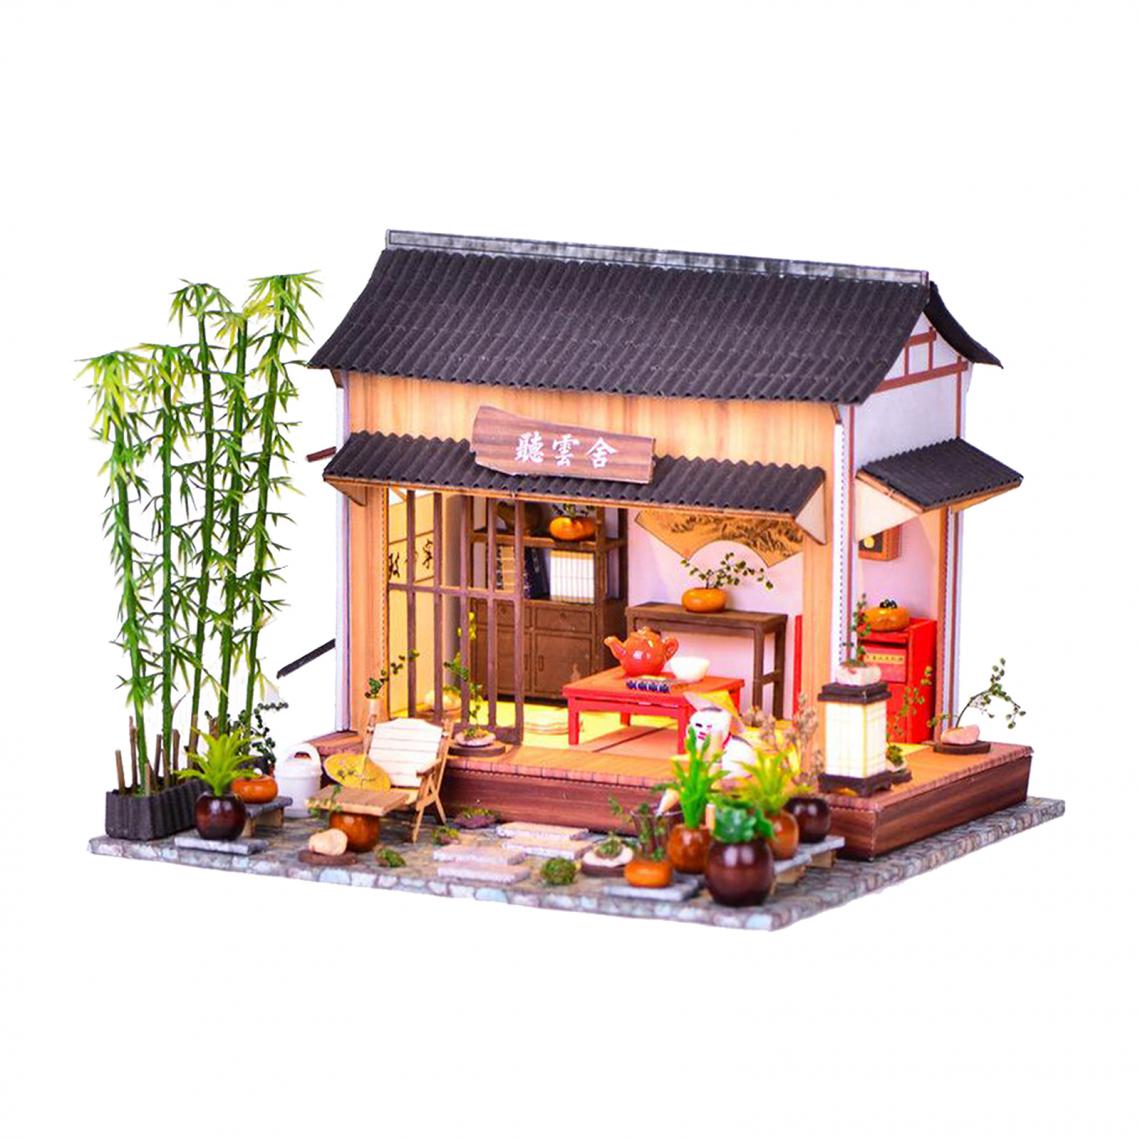 marque generique - Dollhouse Miniature avec des Meubles Jardin Décoration, BRICOLAGE En Bois Dollhouse Kit Chinois Style Chalet, 1:24 Échelle Creative Chambre - Poupées